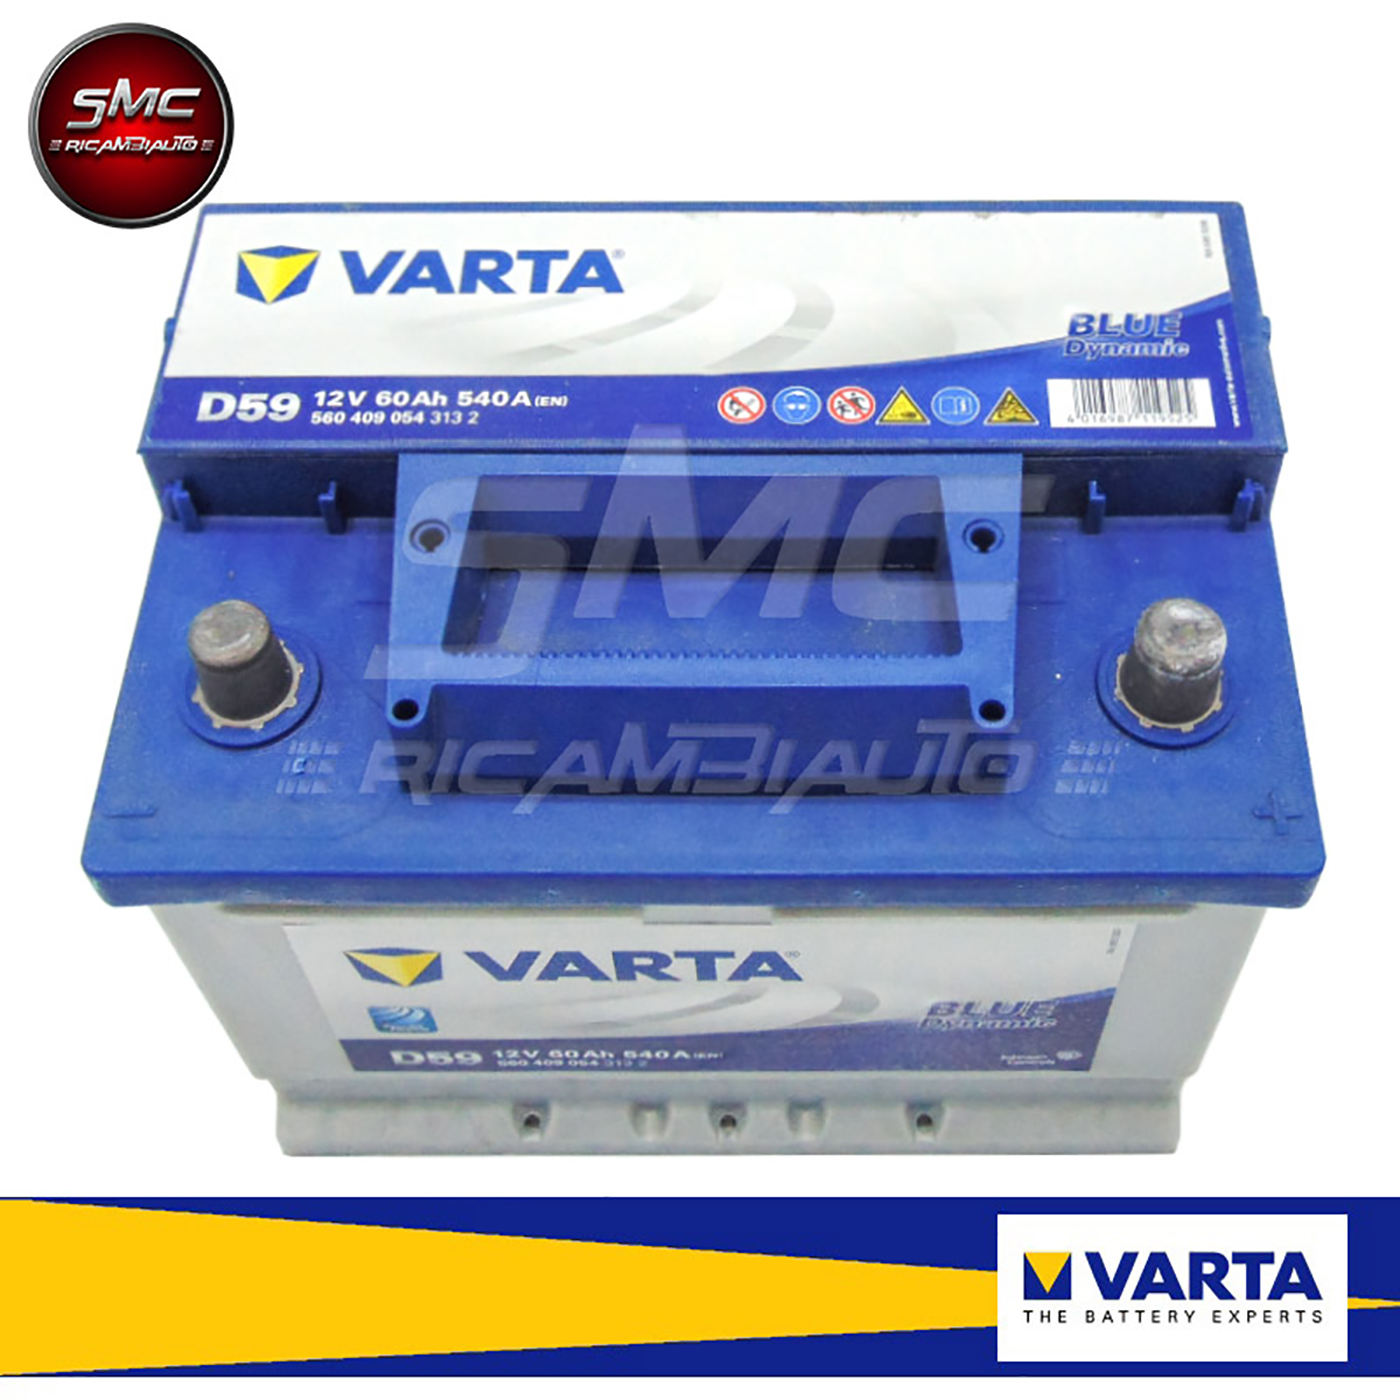 BATTERIA VARTA 12V 60AH 540A(EN) D59  Sos Battery vendita batterie online  a prezzi scontati.